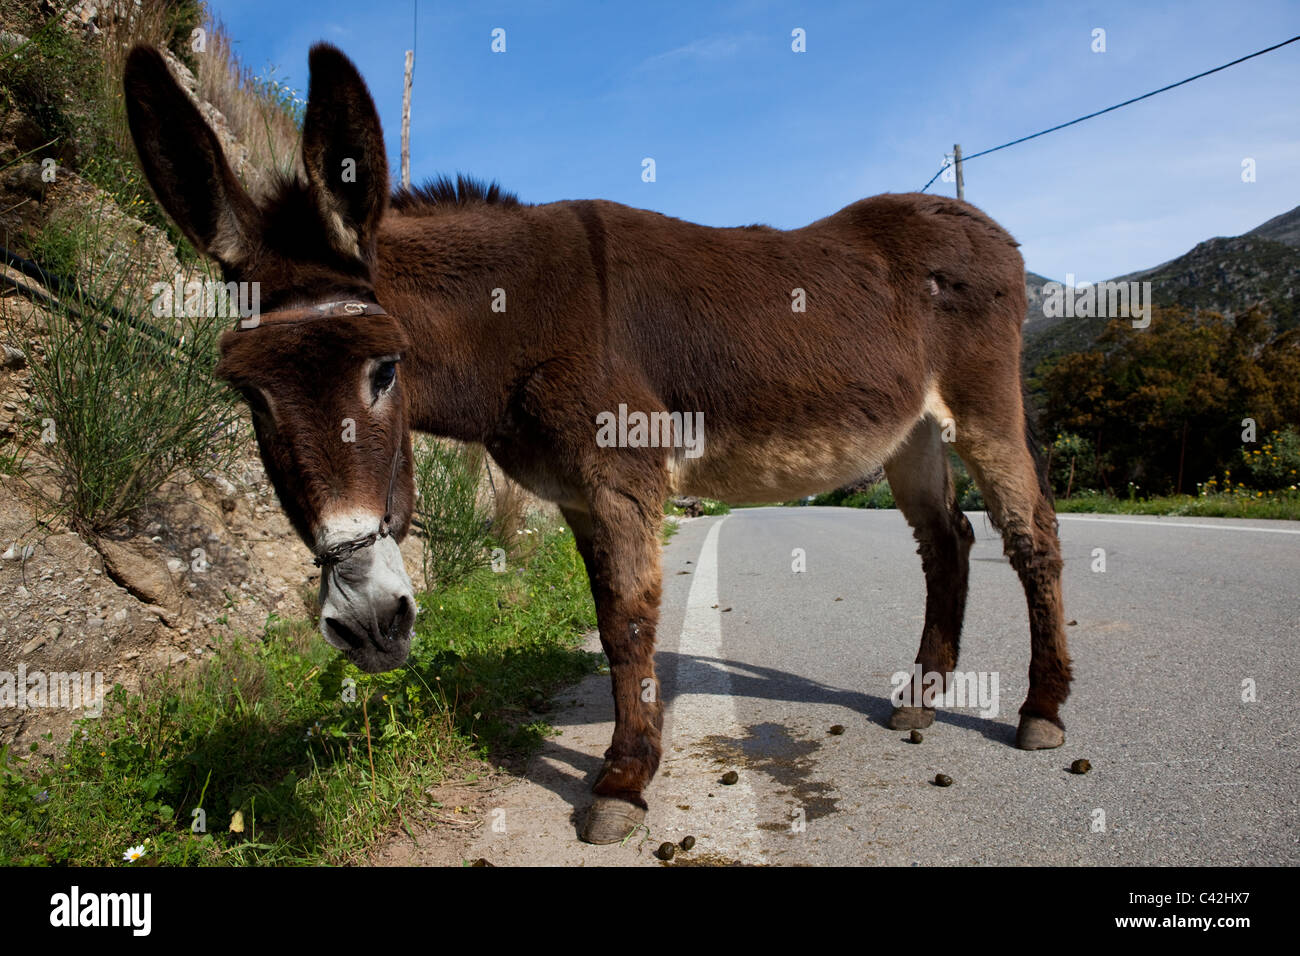 Asino a sinistra su una strada in provincia di Chania, Creta. Foto Stock